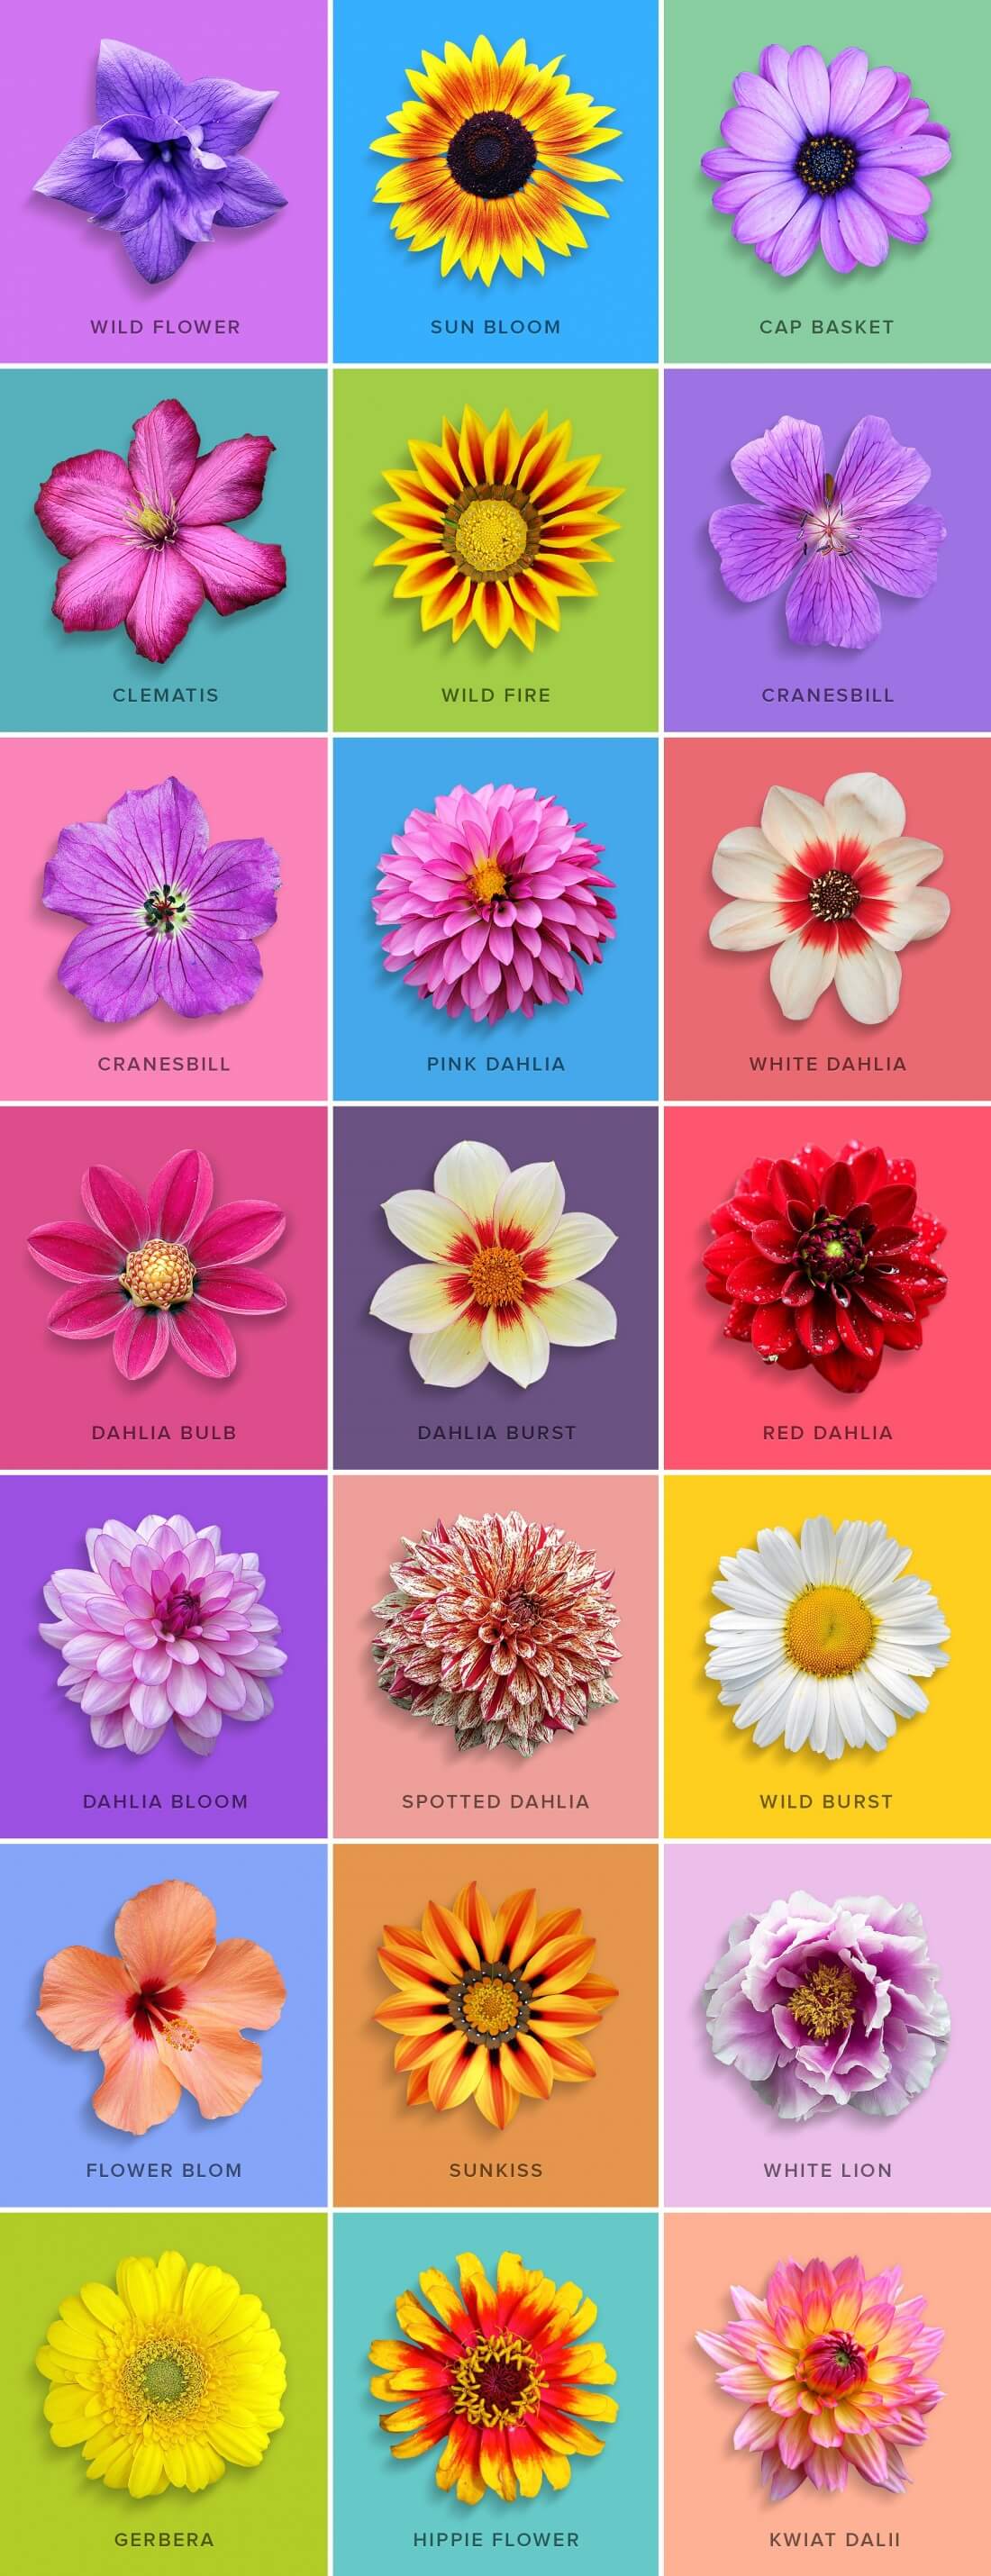 flower-design-collection-1-.jpg